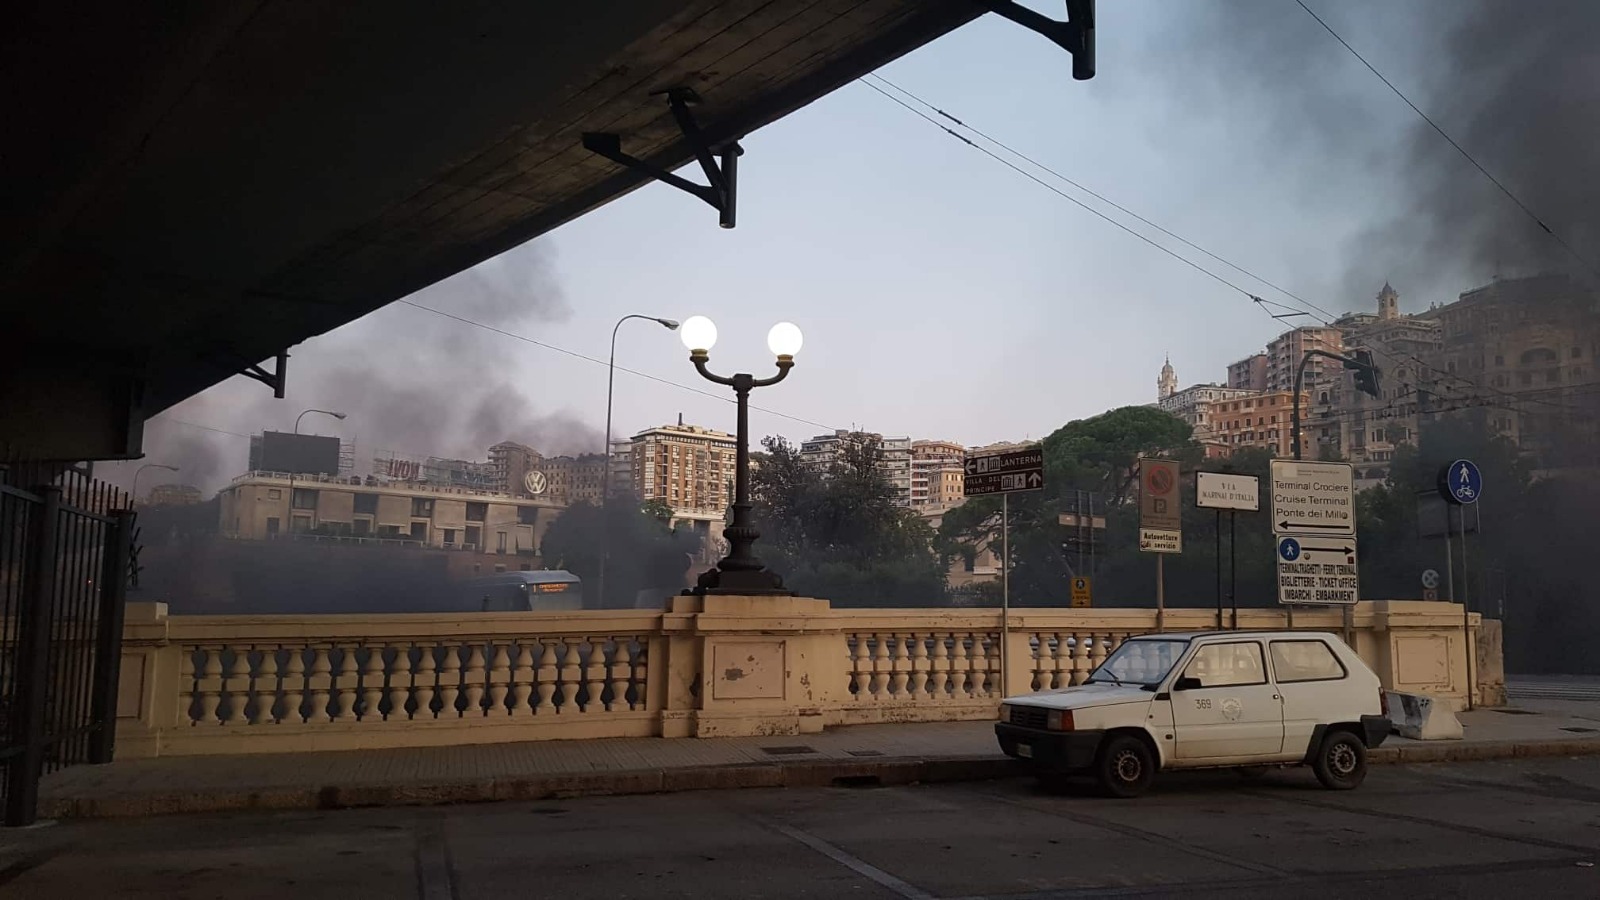 Densa nuvola di fumo davanti alla stazione Marittima: in fiamme masserizie e rifiuti accatastate da clochard